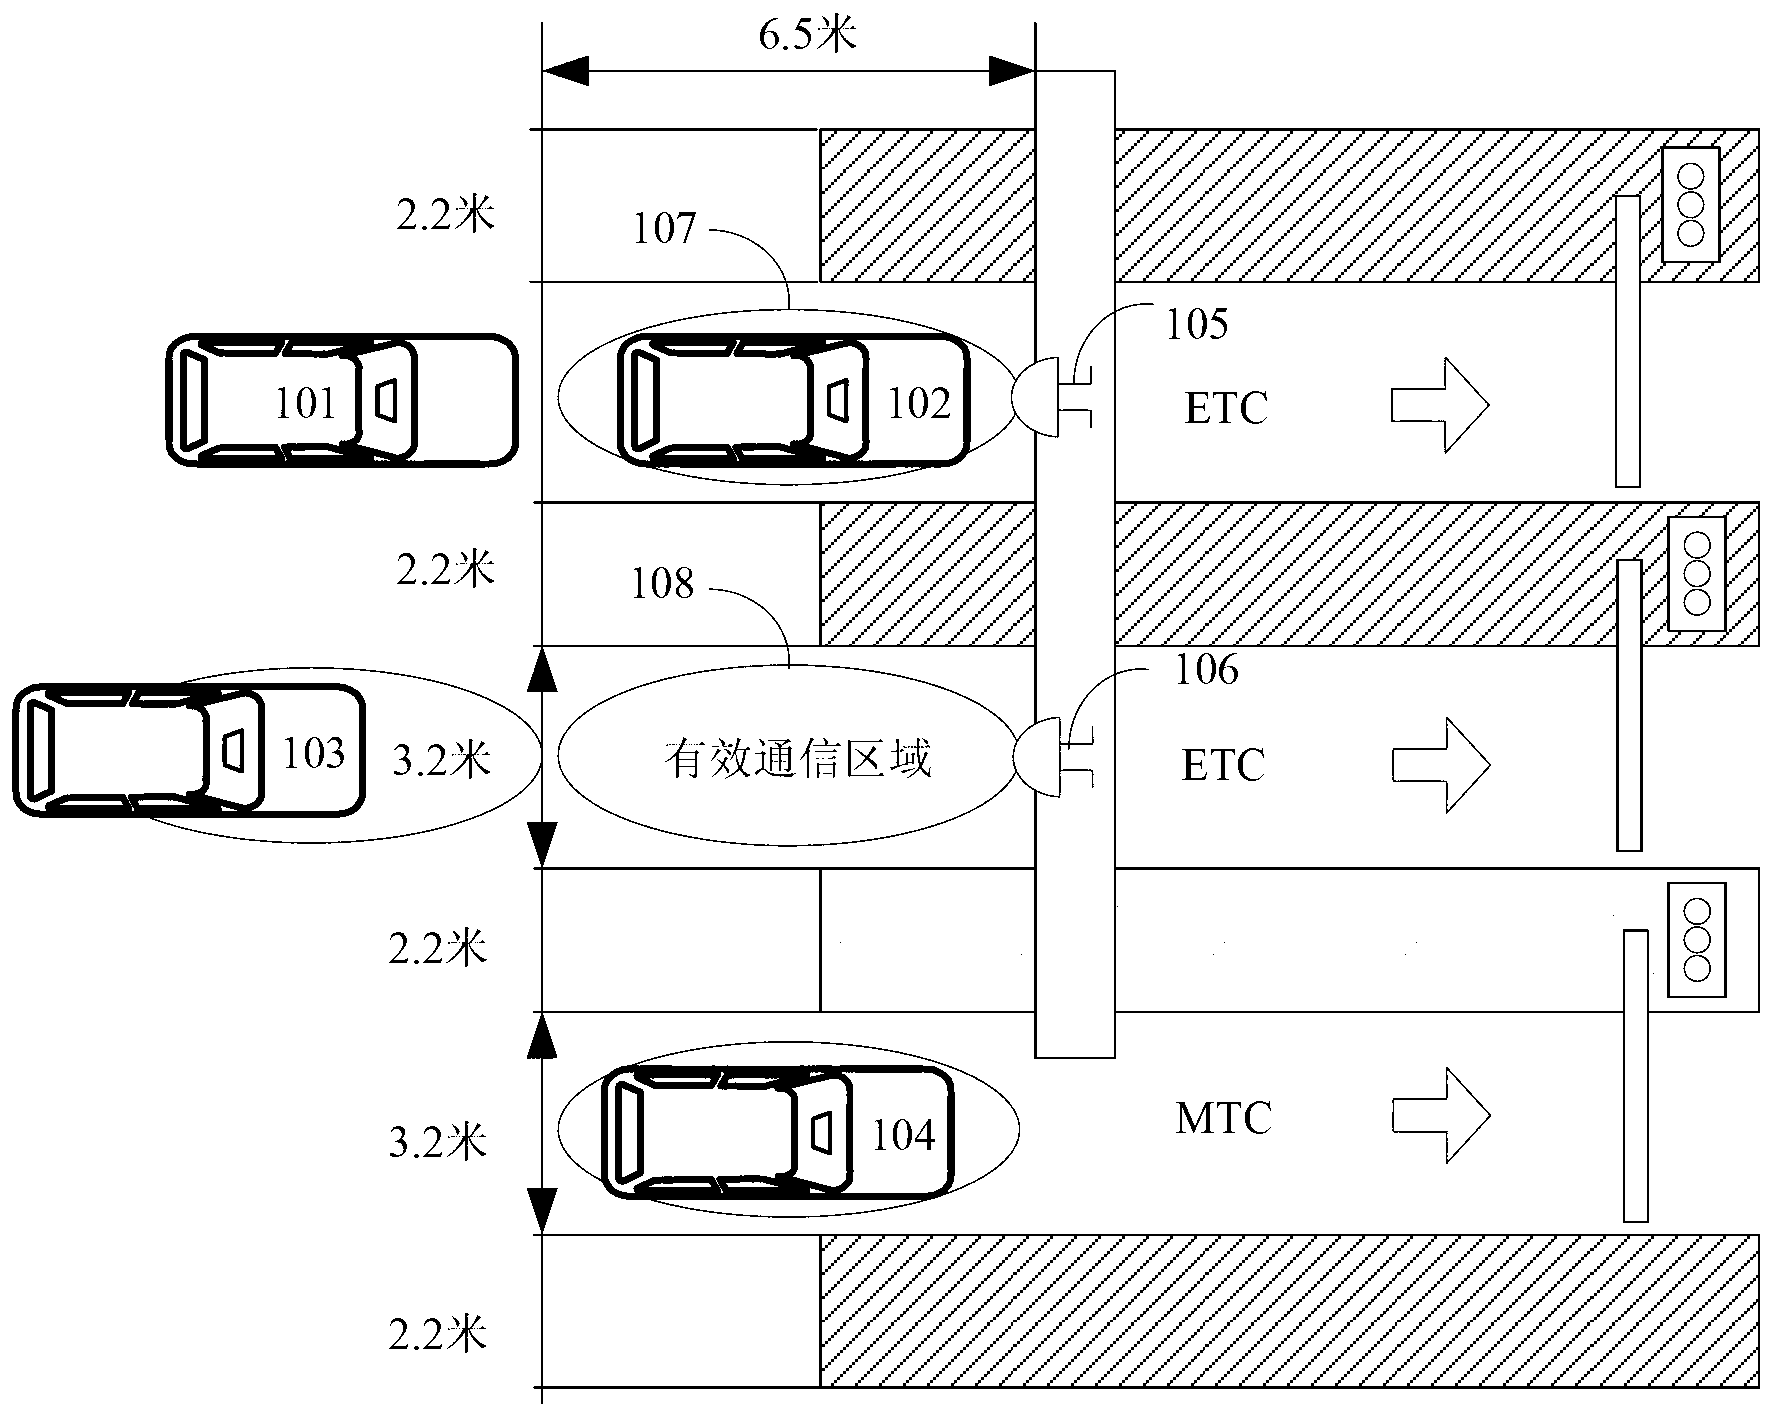 ETC lane anti-jamming method based on multi-beam antenna